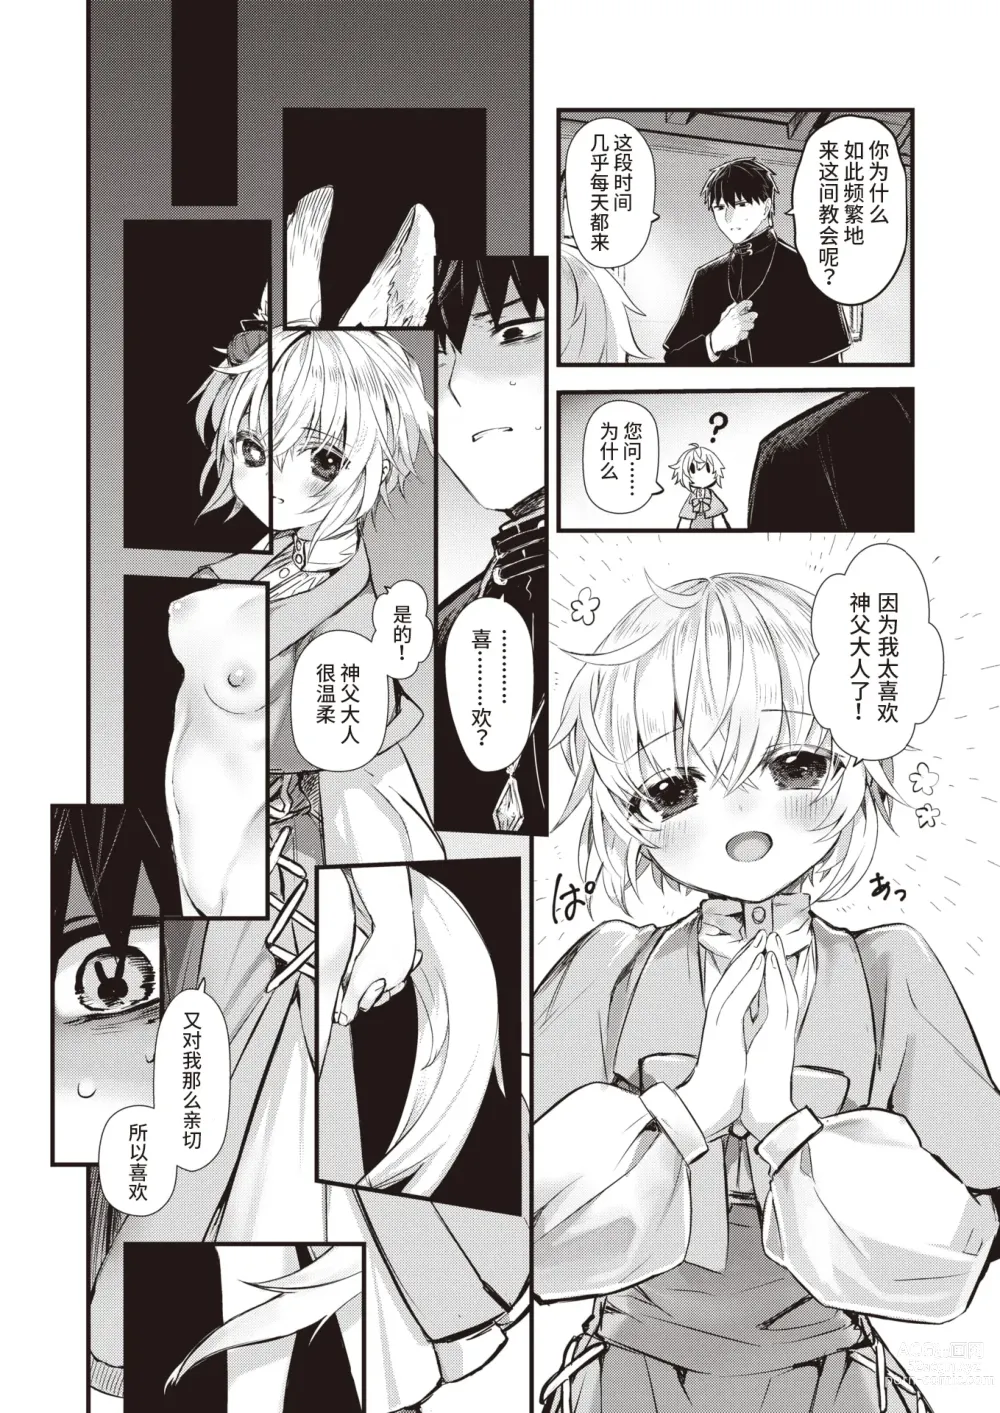 Page 6 of manga 侵入梦境的淫欲 后篇